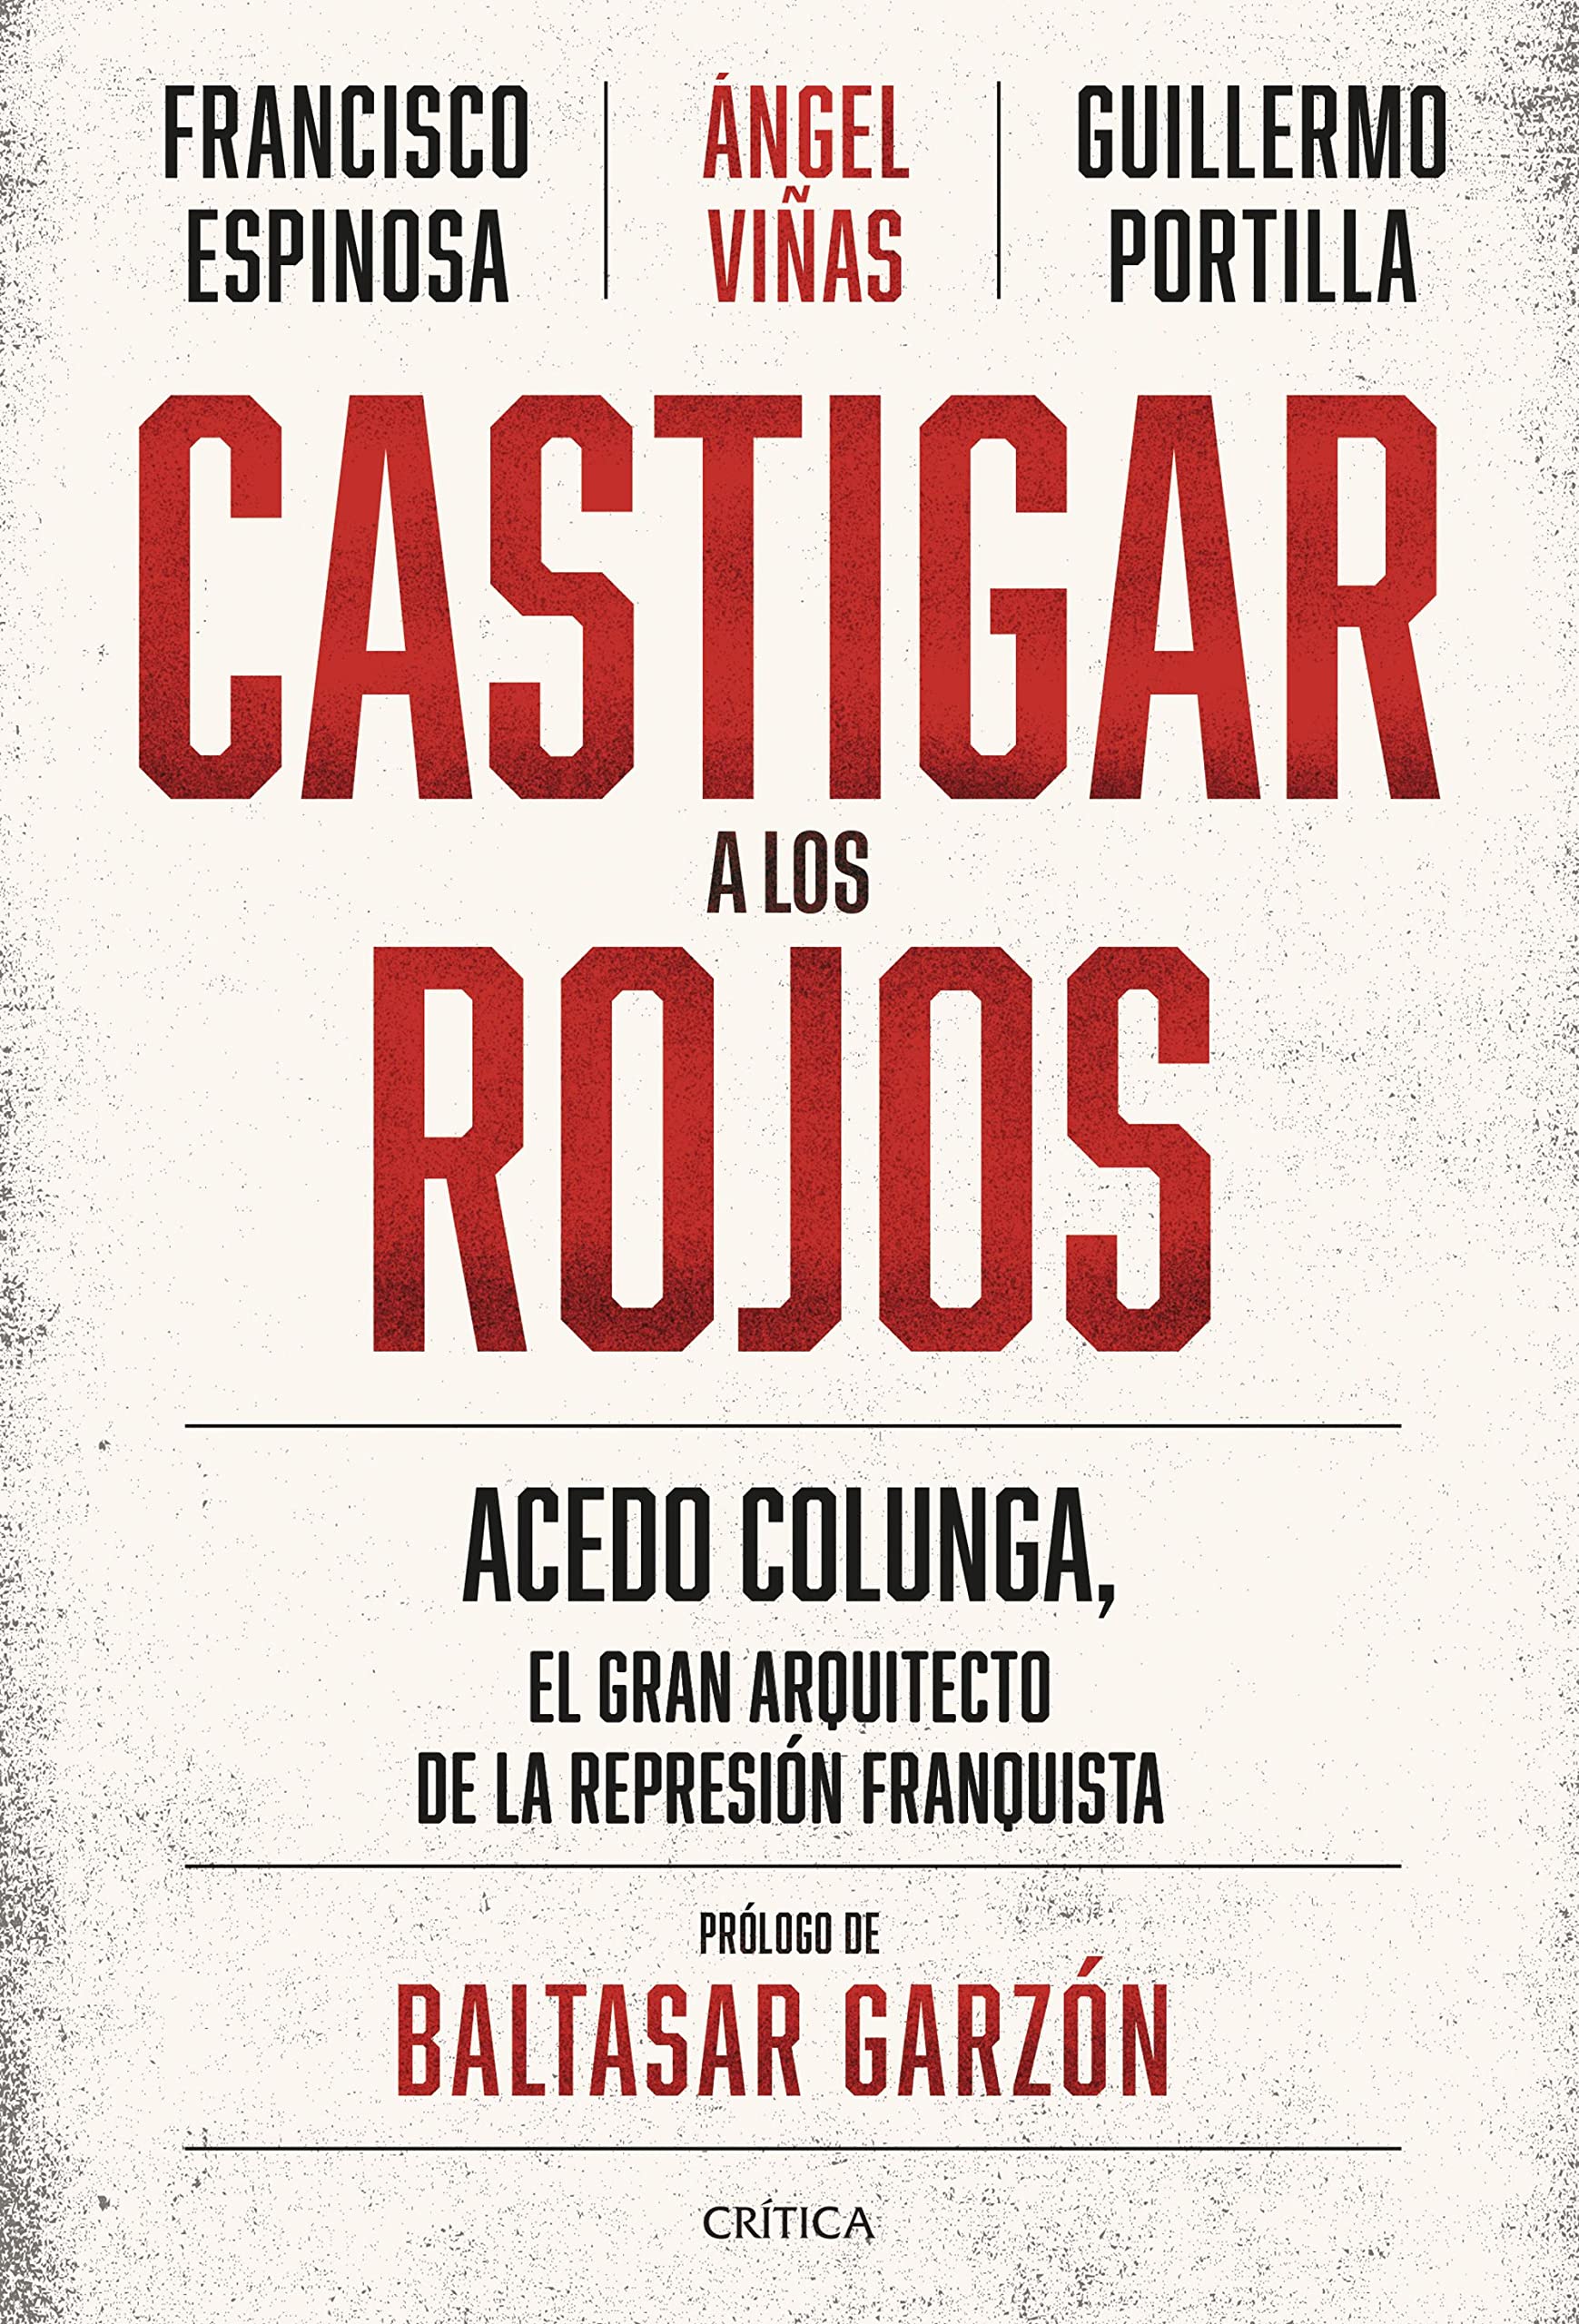 Castigar a los rojos: Acedo Colunga, el gran arquitecto de la represión franquista